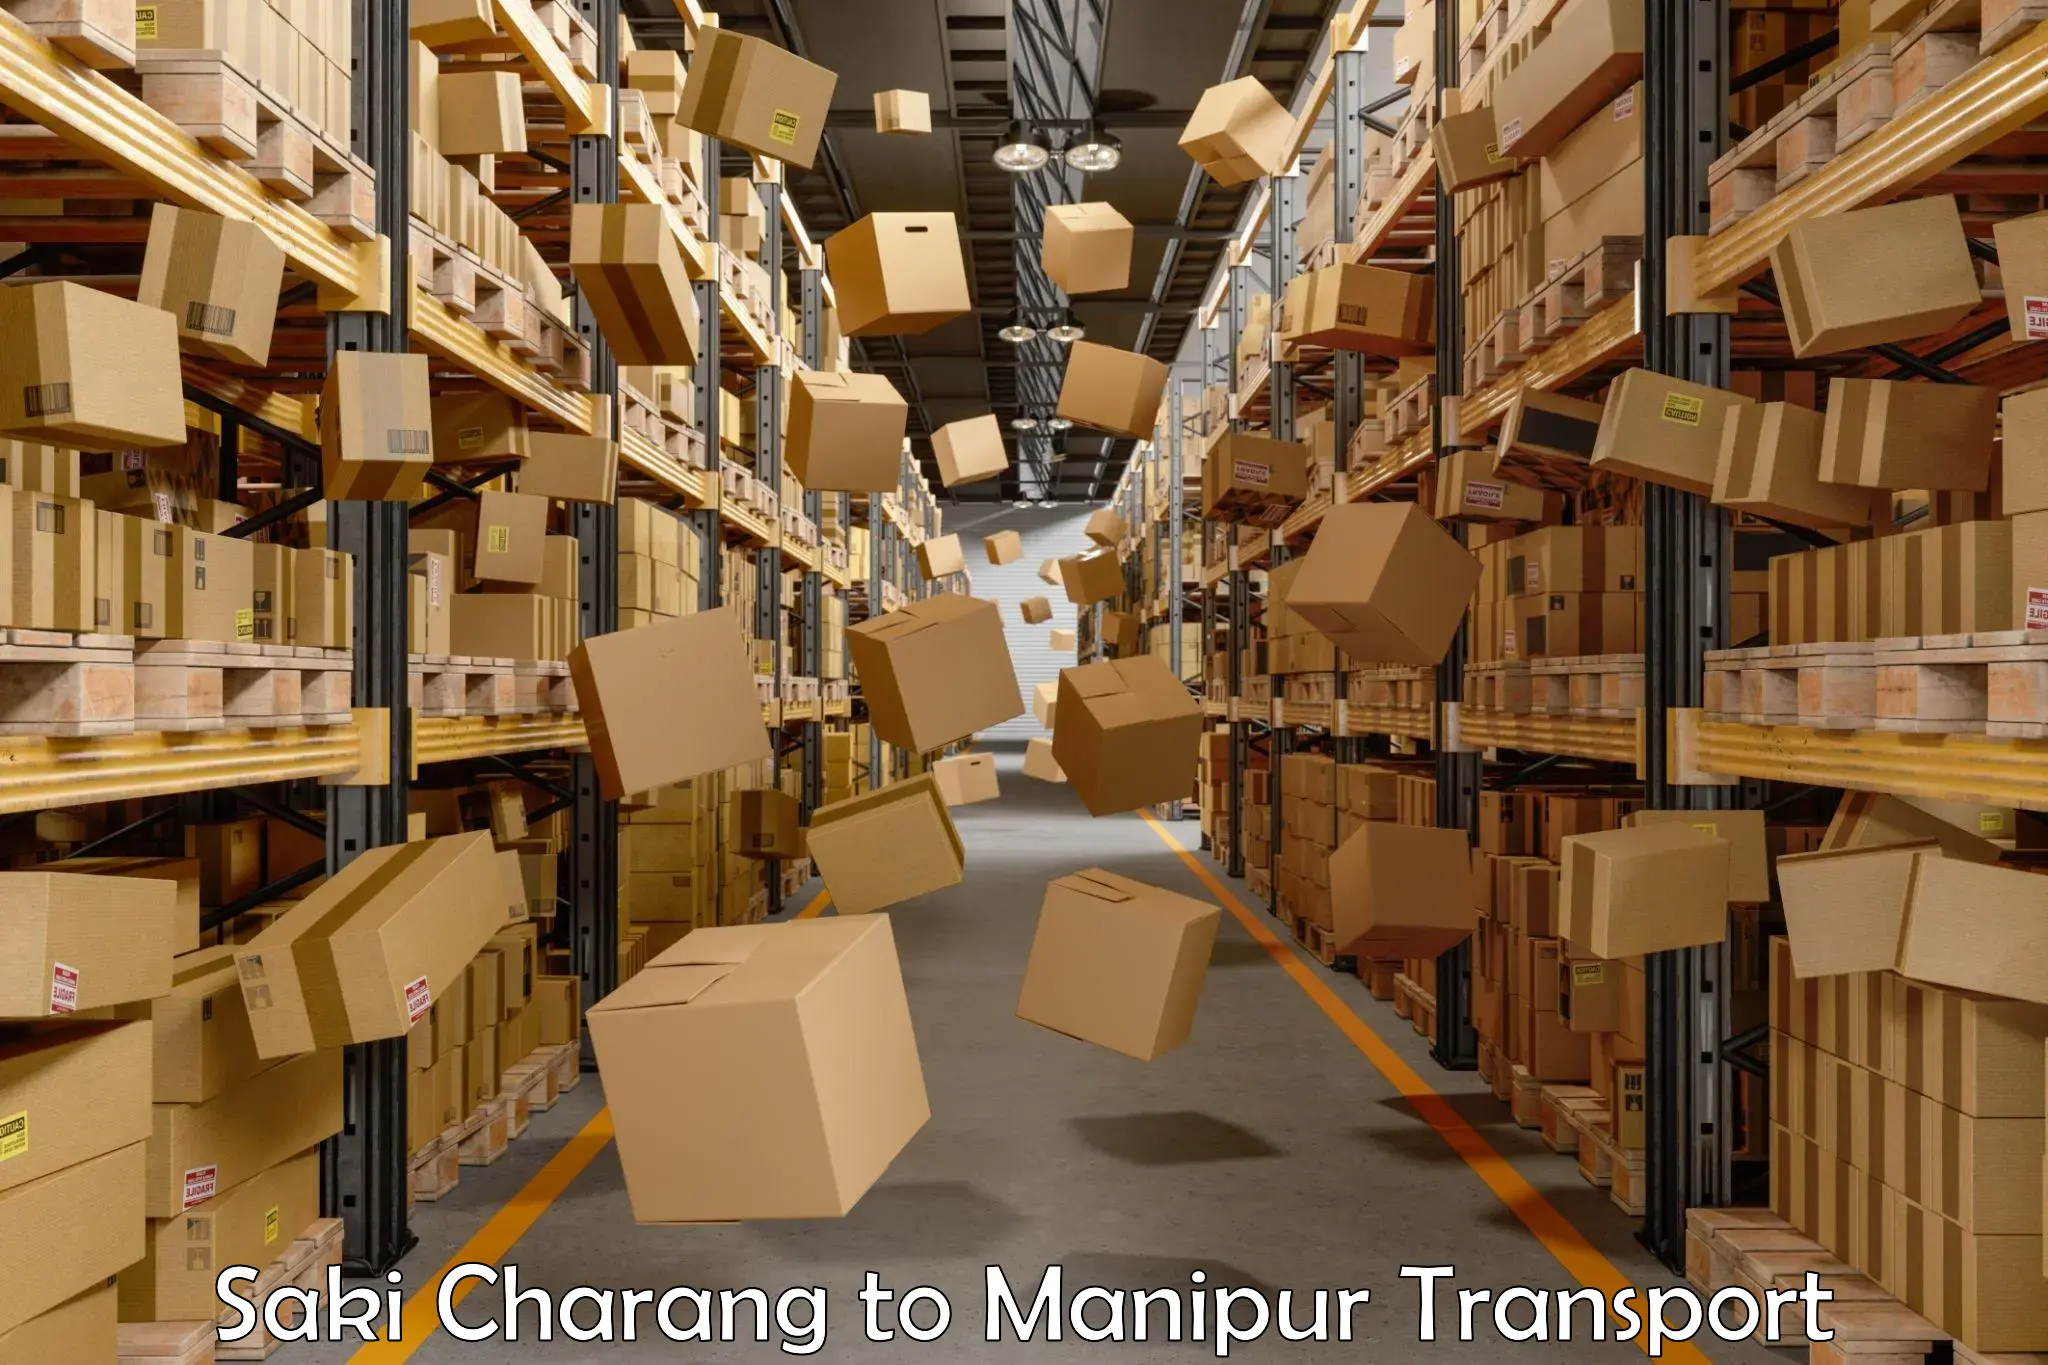 Lorry transport service Saki Charang to Manipur